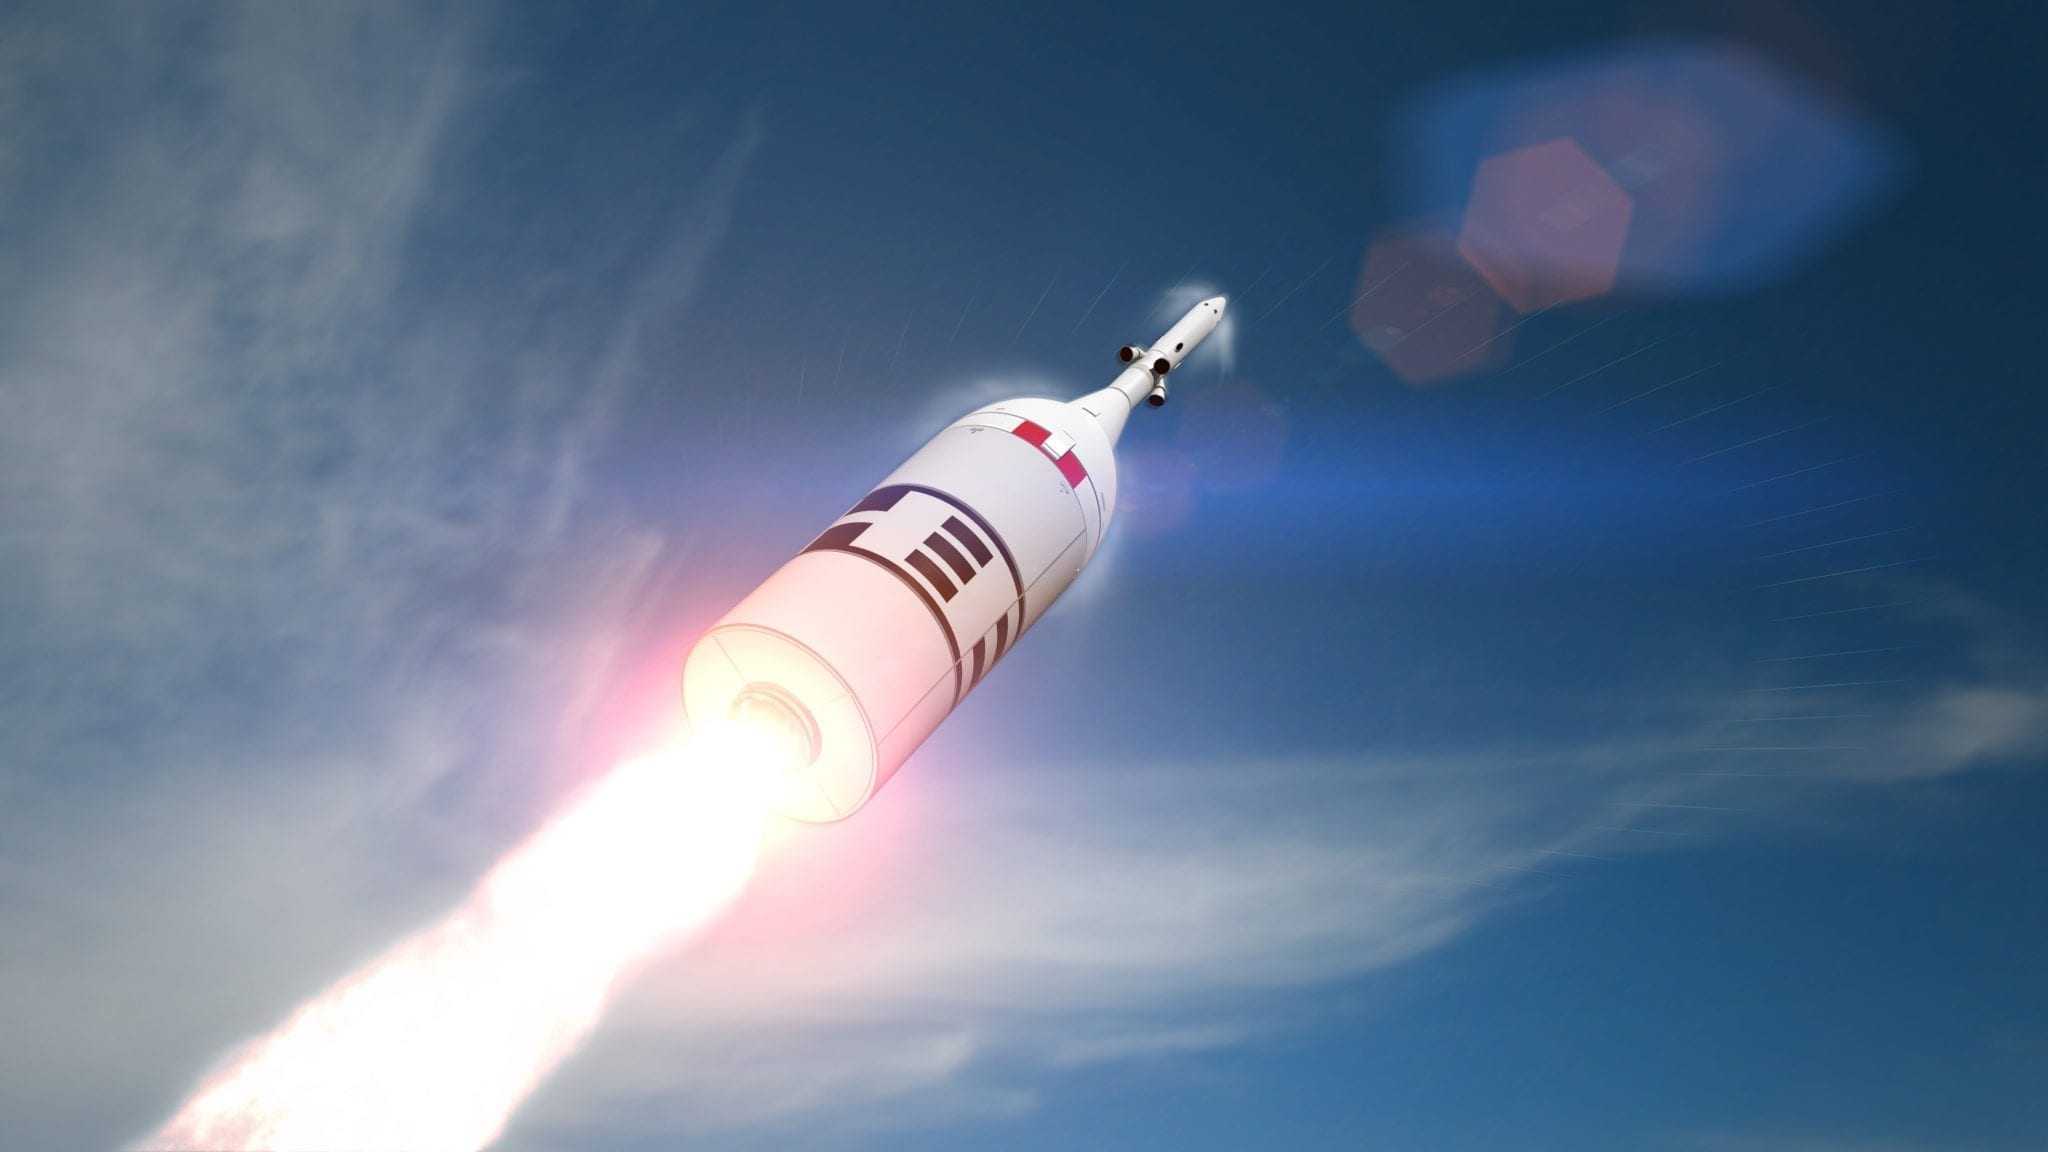 Orion Spacecraft Ascent Abort-2 Test